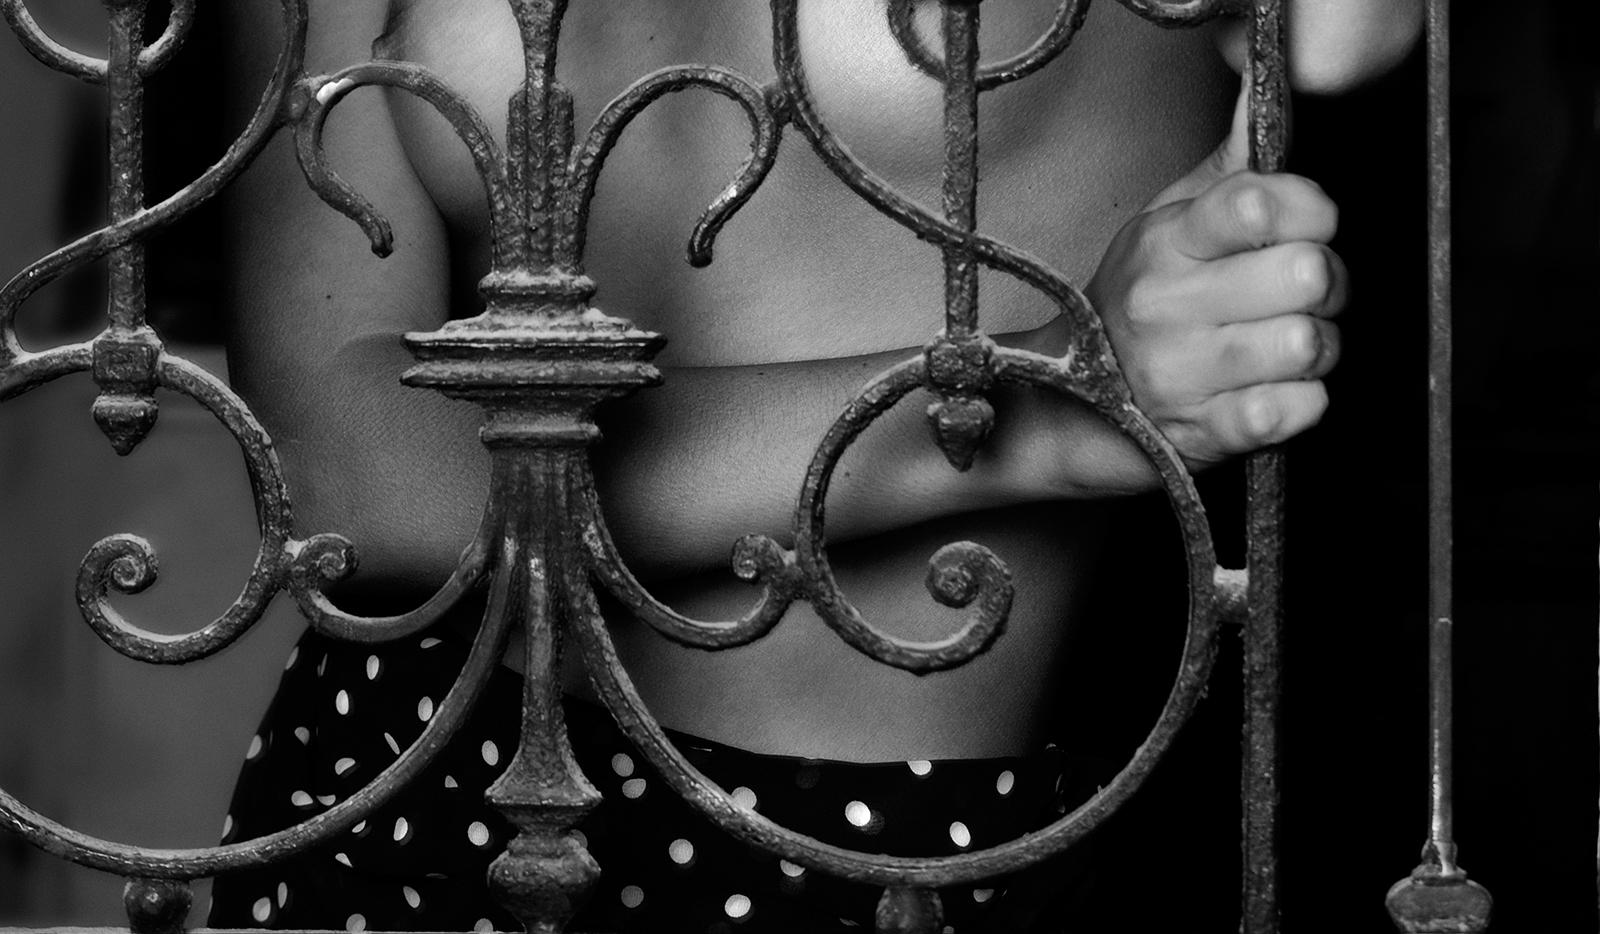 Impression d'art nue en édition limitée signée, Woman Model, Intimate - Caroline - Contemporain Photograph par Ian Sanderson